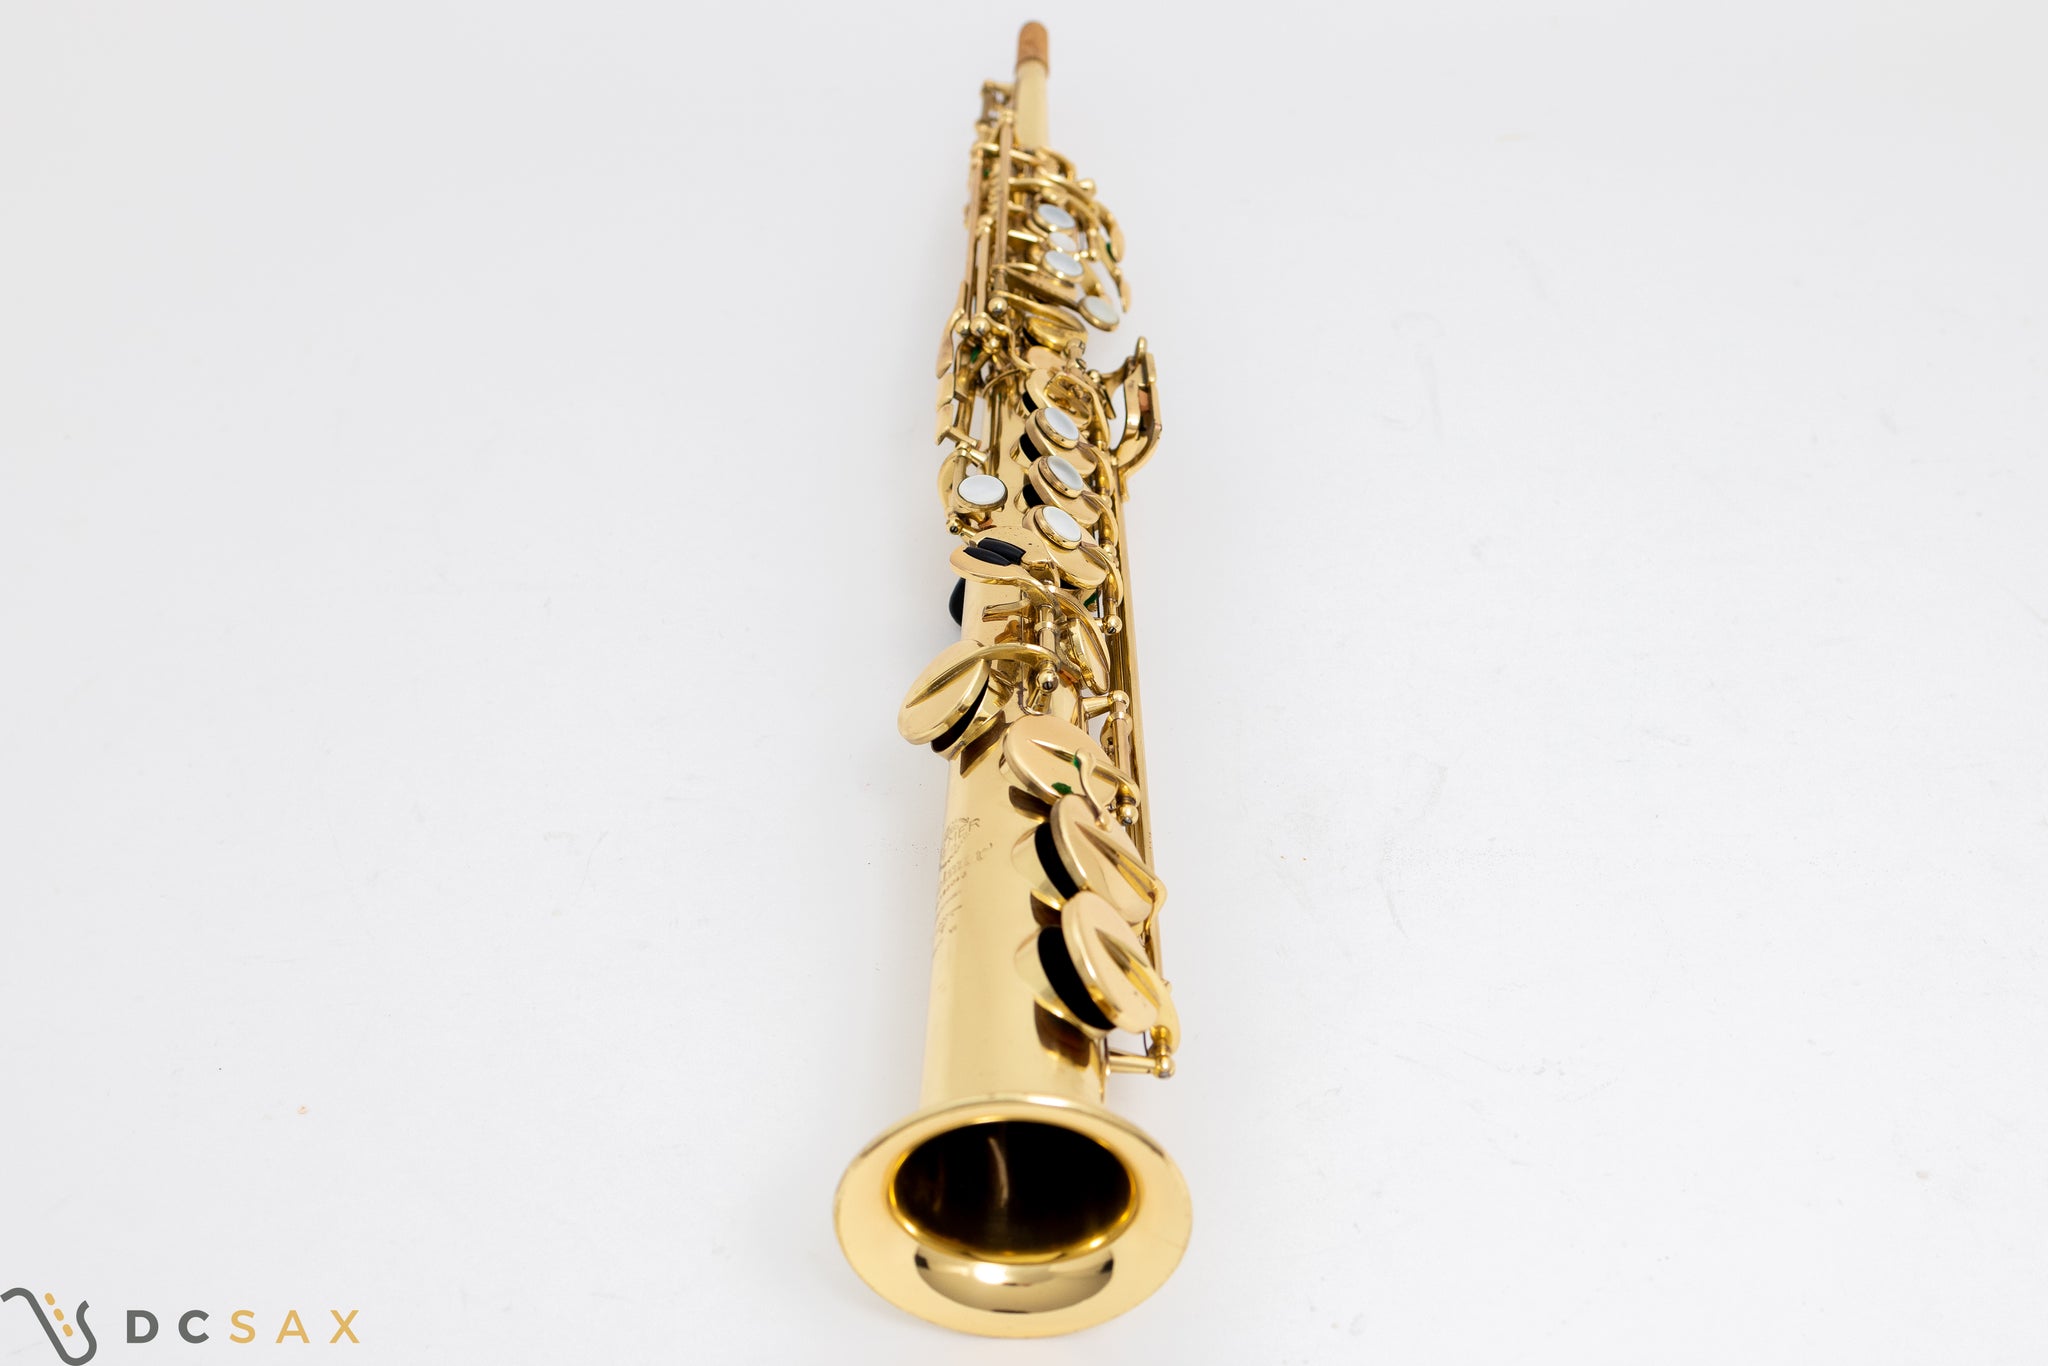 183,xxx Selmer Mark VI Soprano Saxophone, 99%+ Original Lacquer, Just Serviced, Video